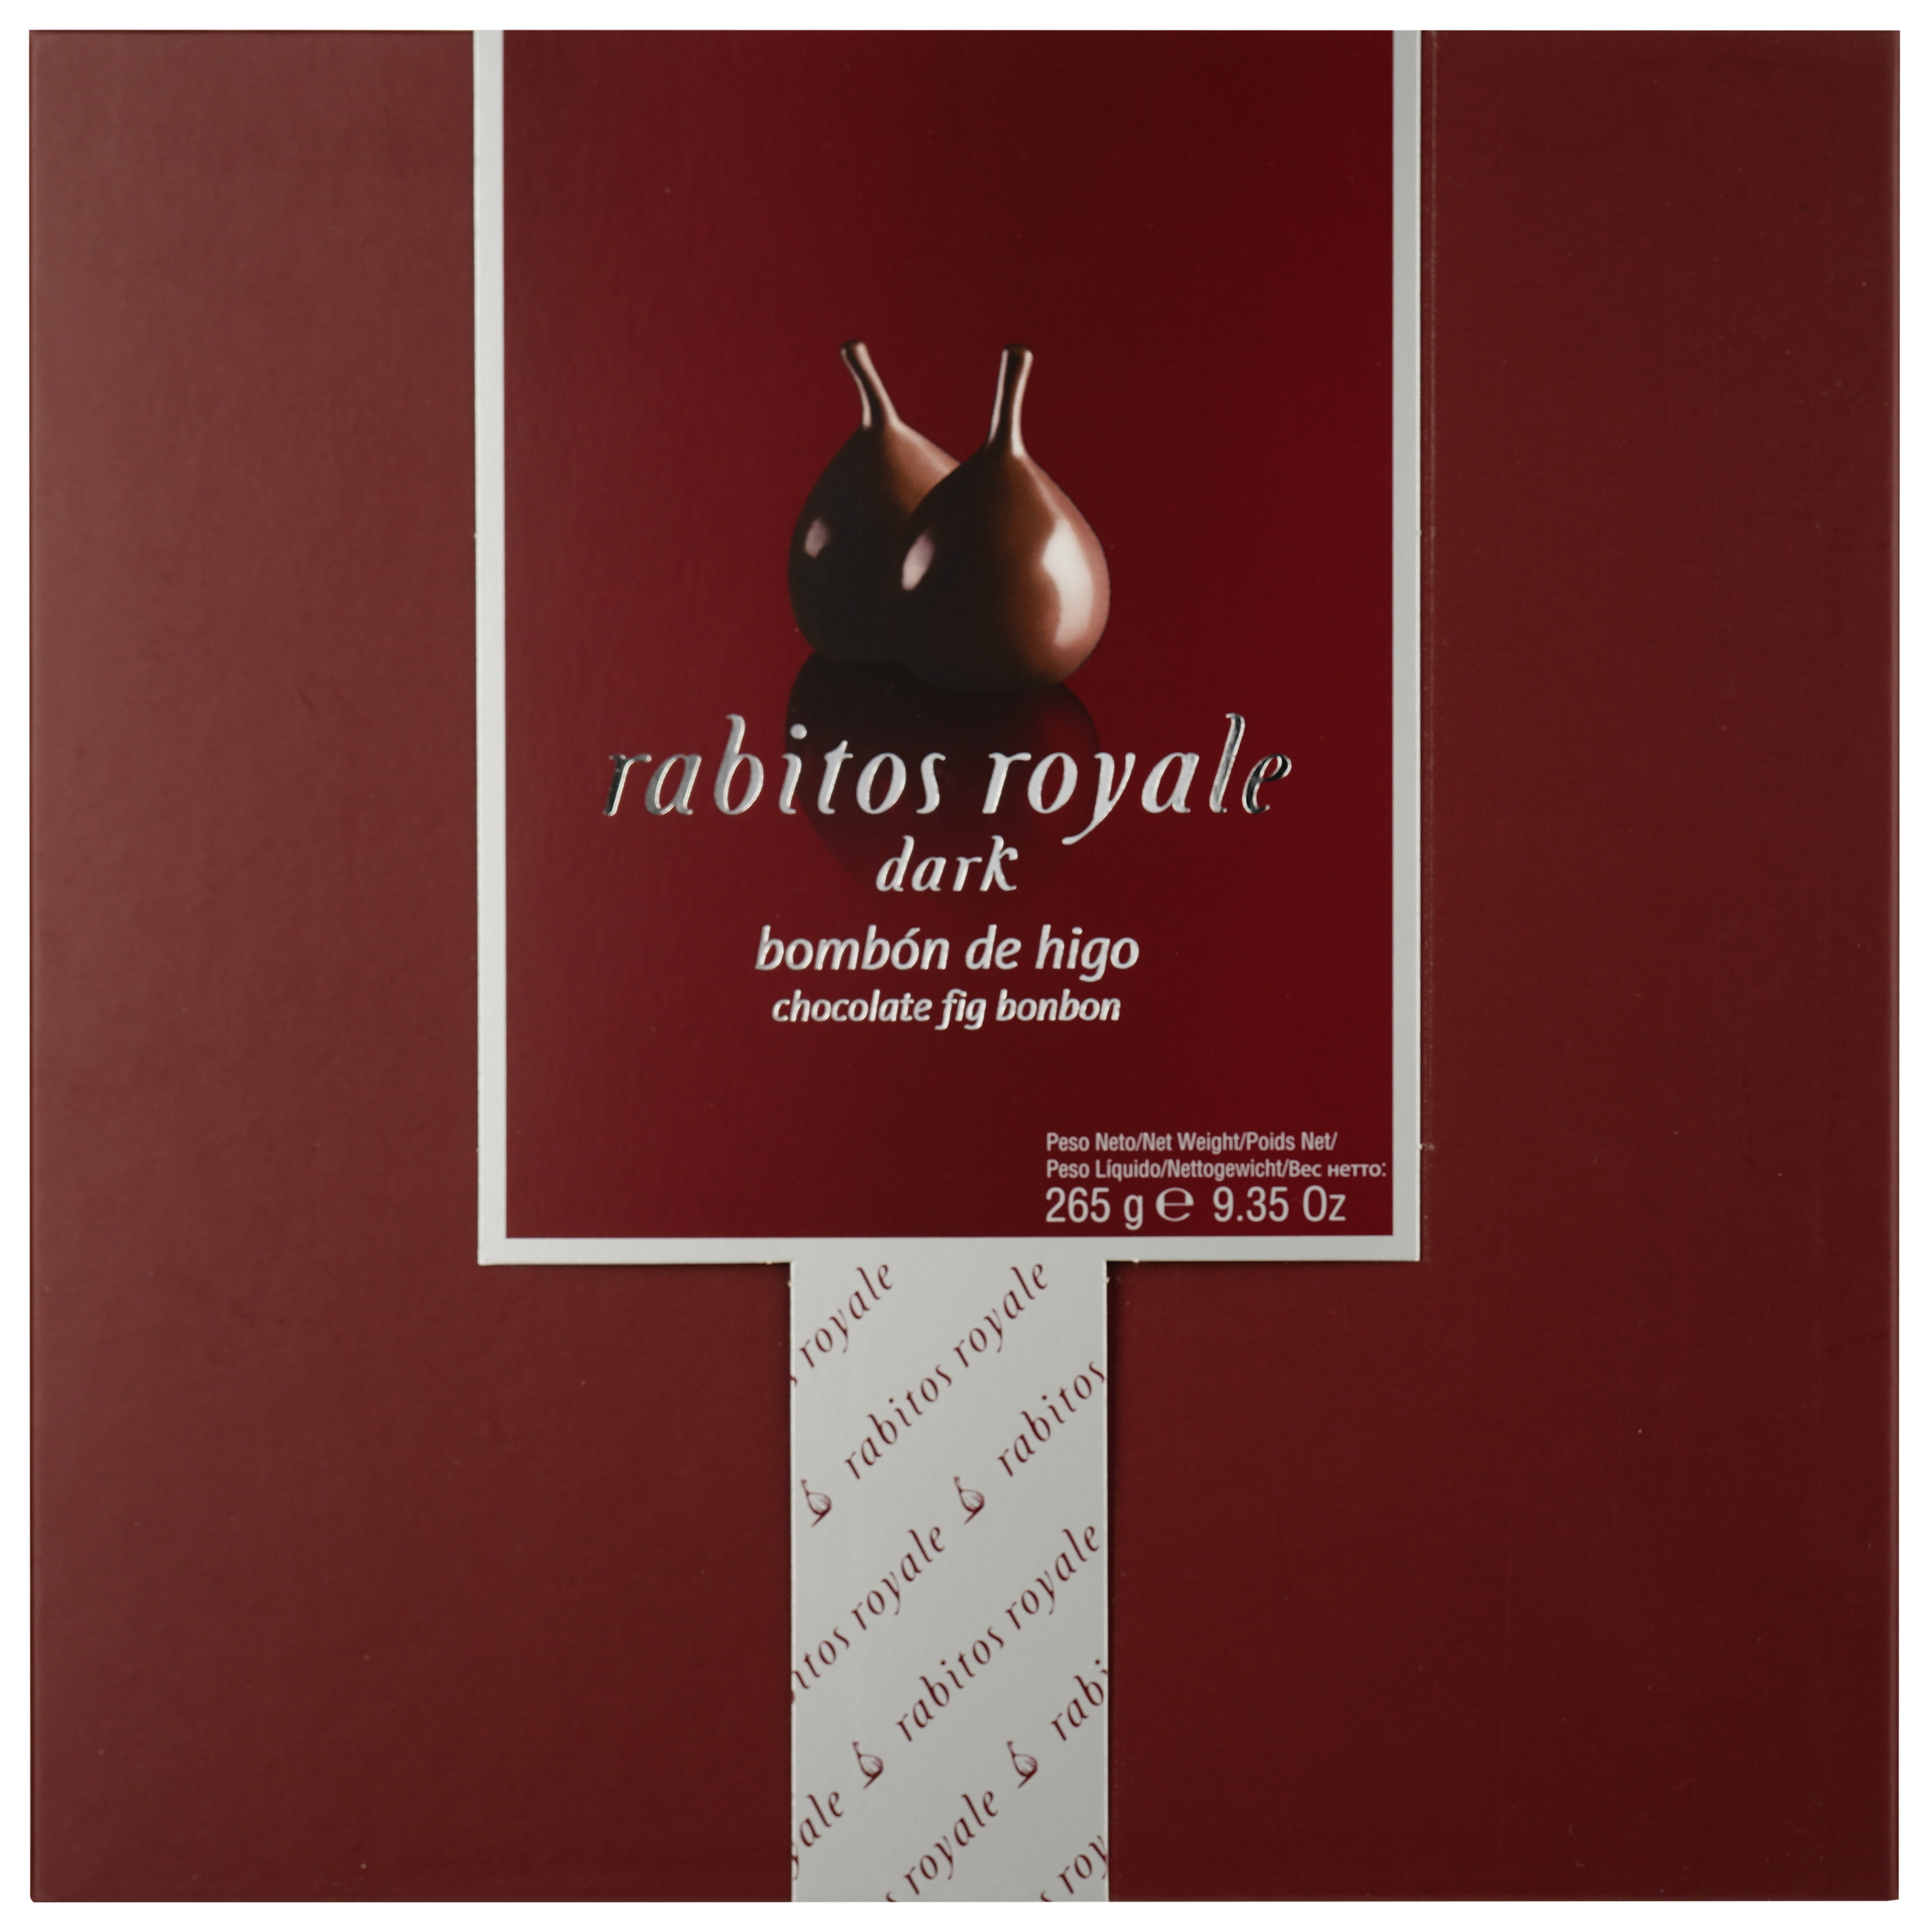 Цукерки Rabitos Royale інжир у темному шоколаді, 265 г - фото 1